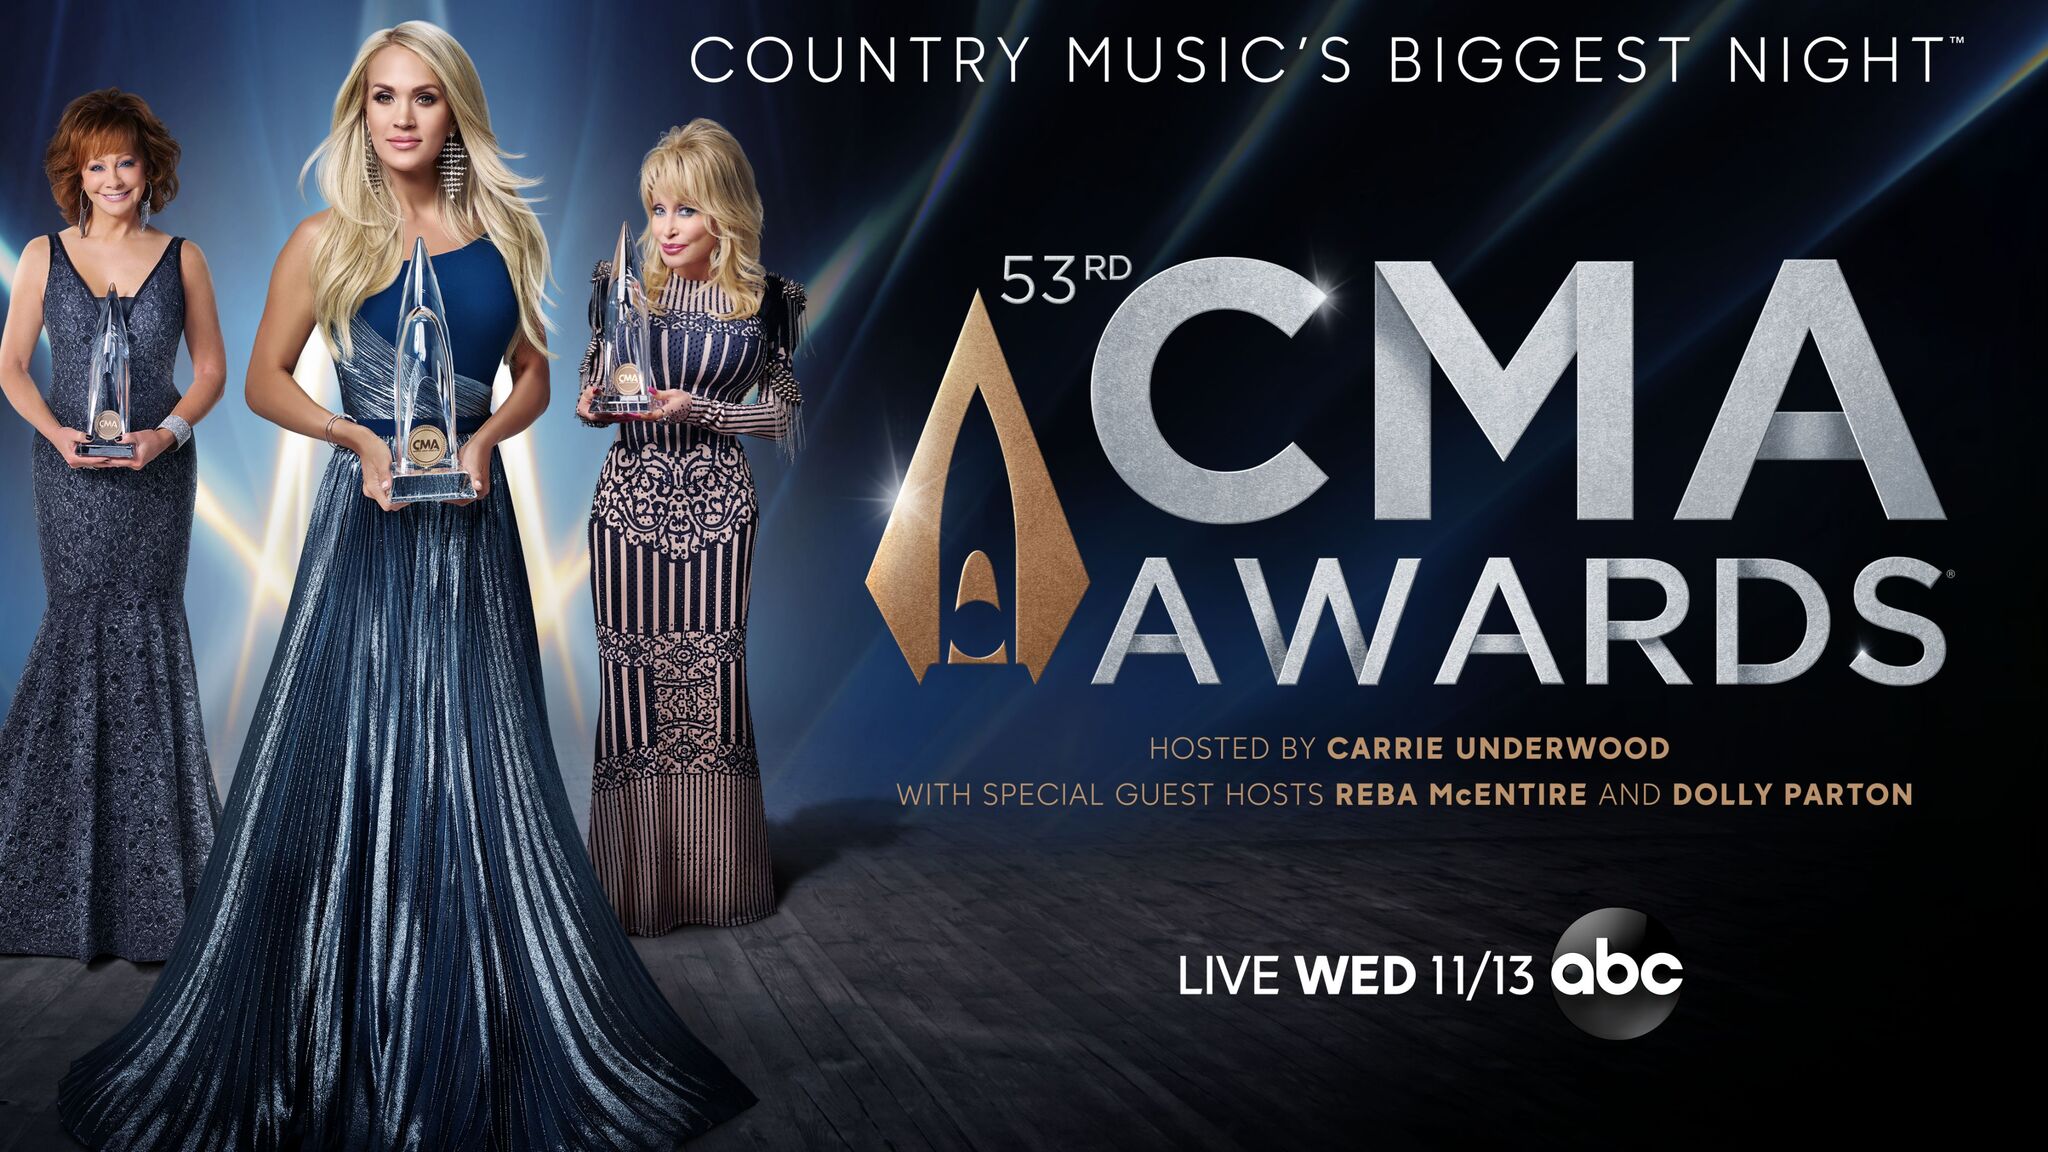 CMA Country Music Awards Show – BAMA IMC